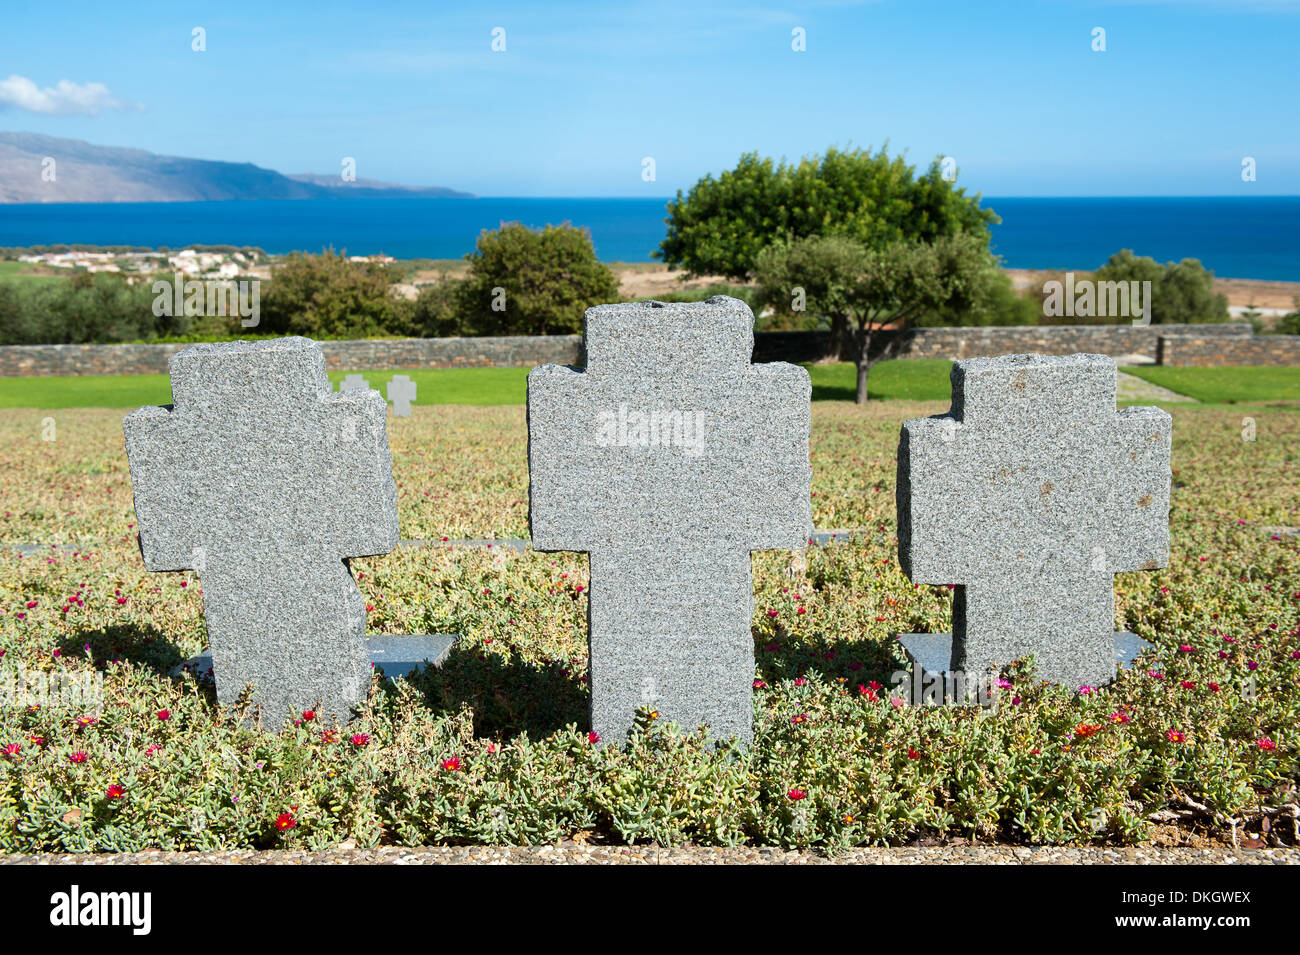 El cementerio de guerra, Maleme, unidad regional de Chania, en Creta, Grecia Foto de stock